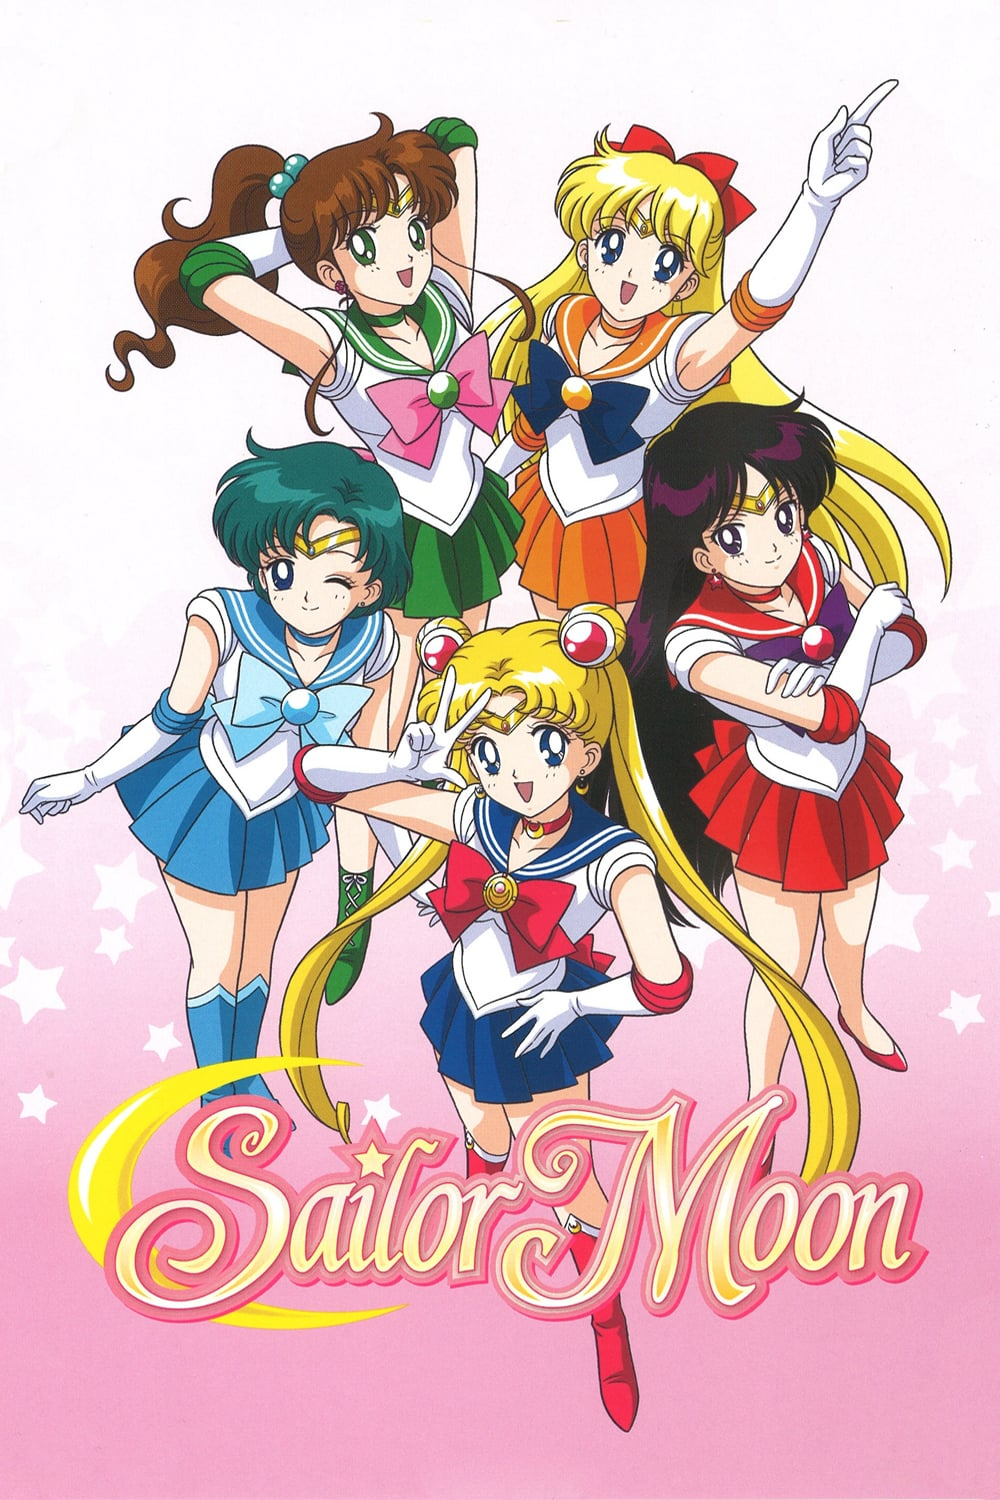 Hoy está de - Sailor Moon Crystal Doblaje Latino